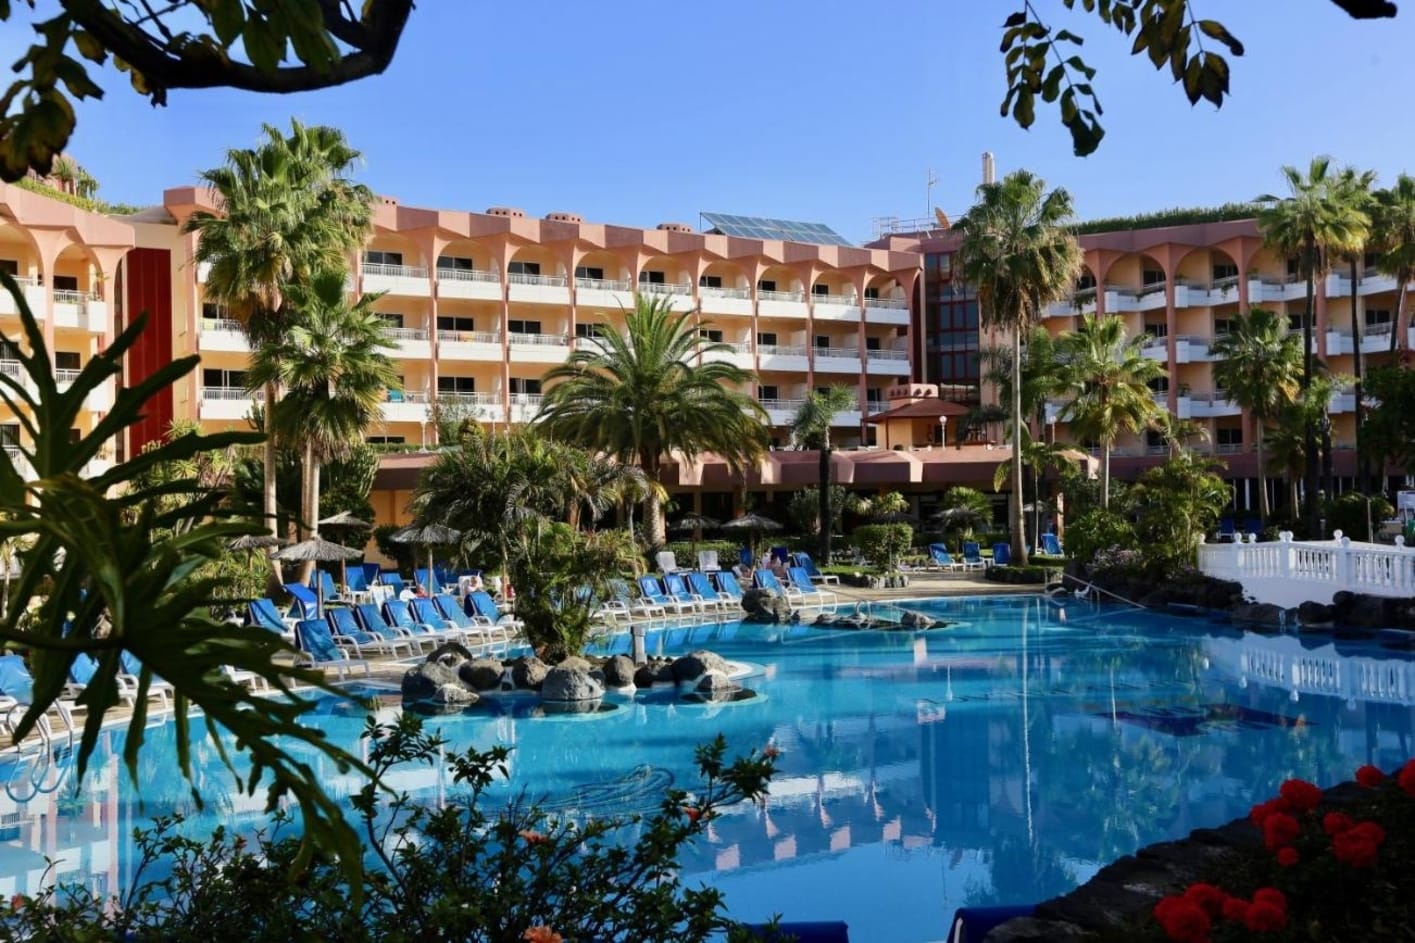 Puerto Palace, hotel en Tenerife barato